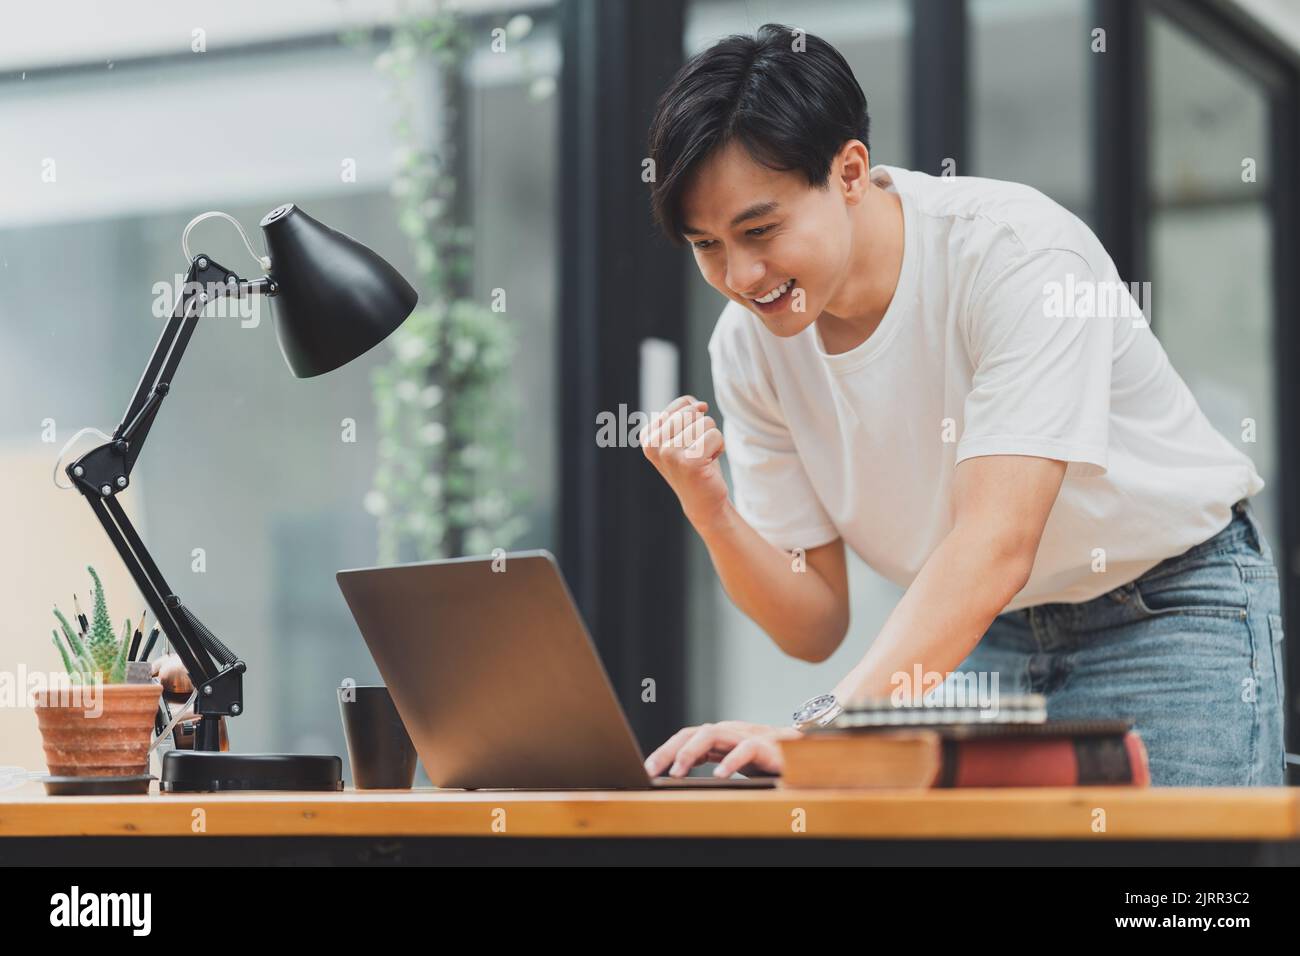 Un homme asiatique heureux utilisant un ordinateur portable tout en ayant une bonne nouvelle de travailler au bureau Banque D'Images